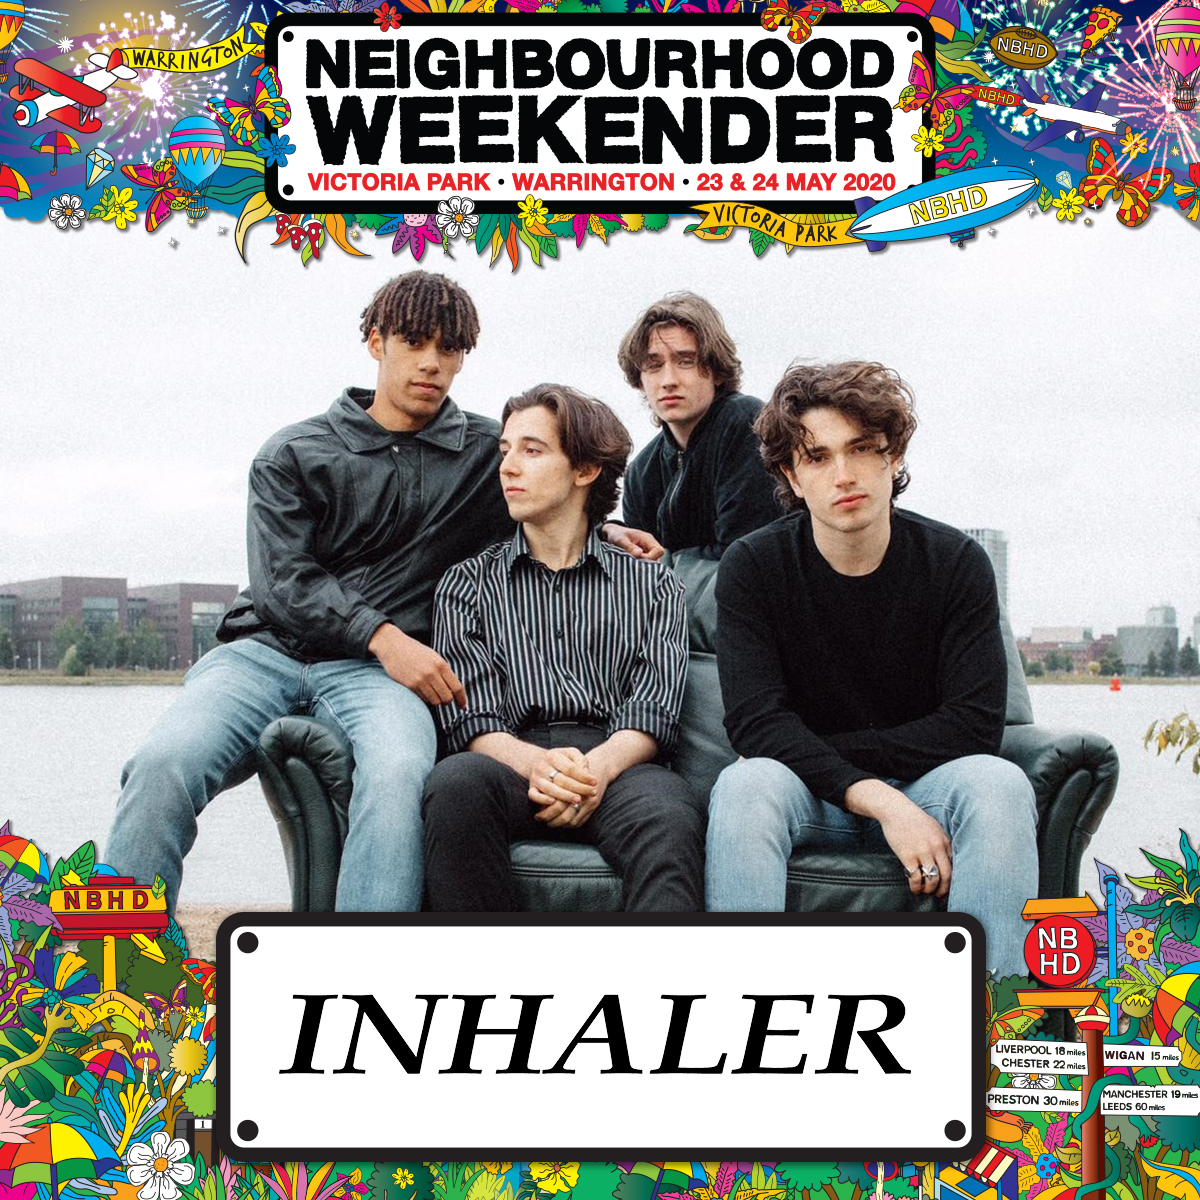 Inhaler - We will now be performing at Neighbourhood Weekender at